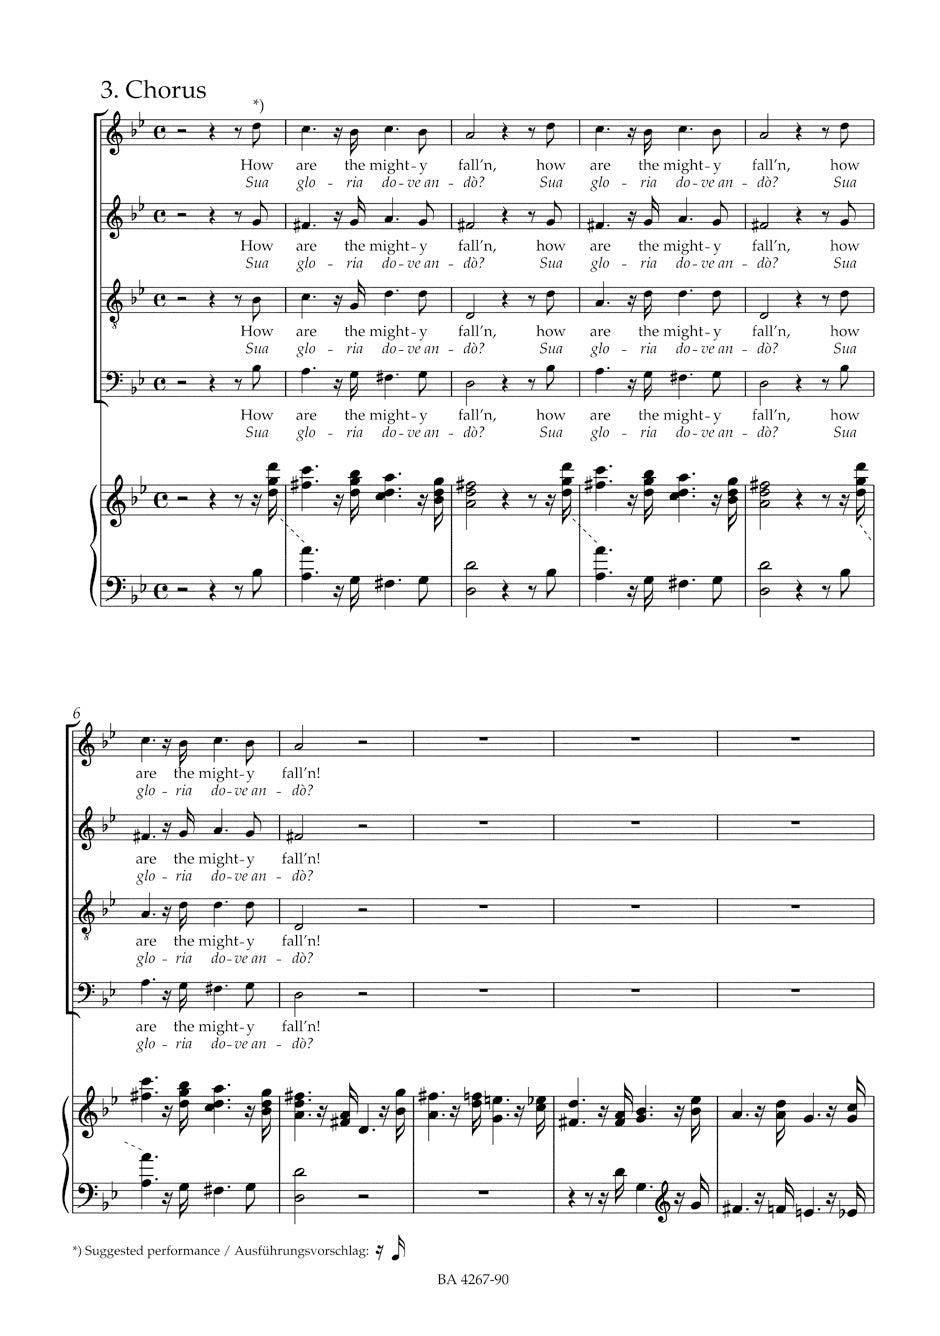 Handel Anthem for the Funeral of Queen Caroline HWV 264